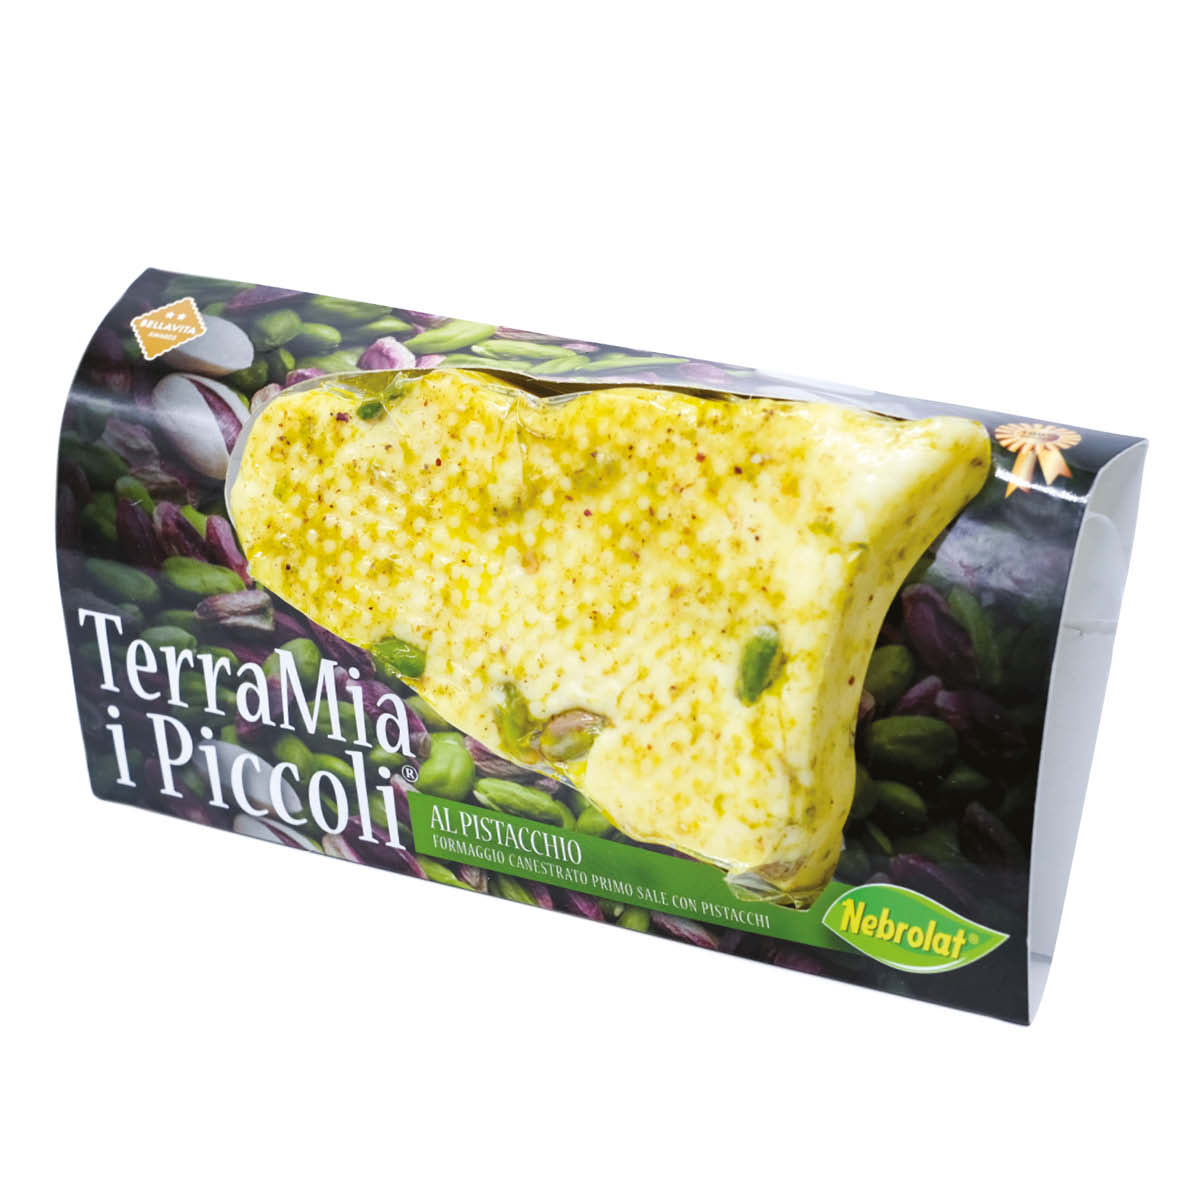 I Piccoli TerraMia® with pistachio